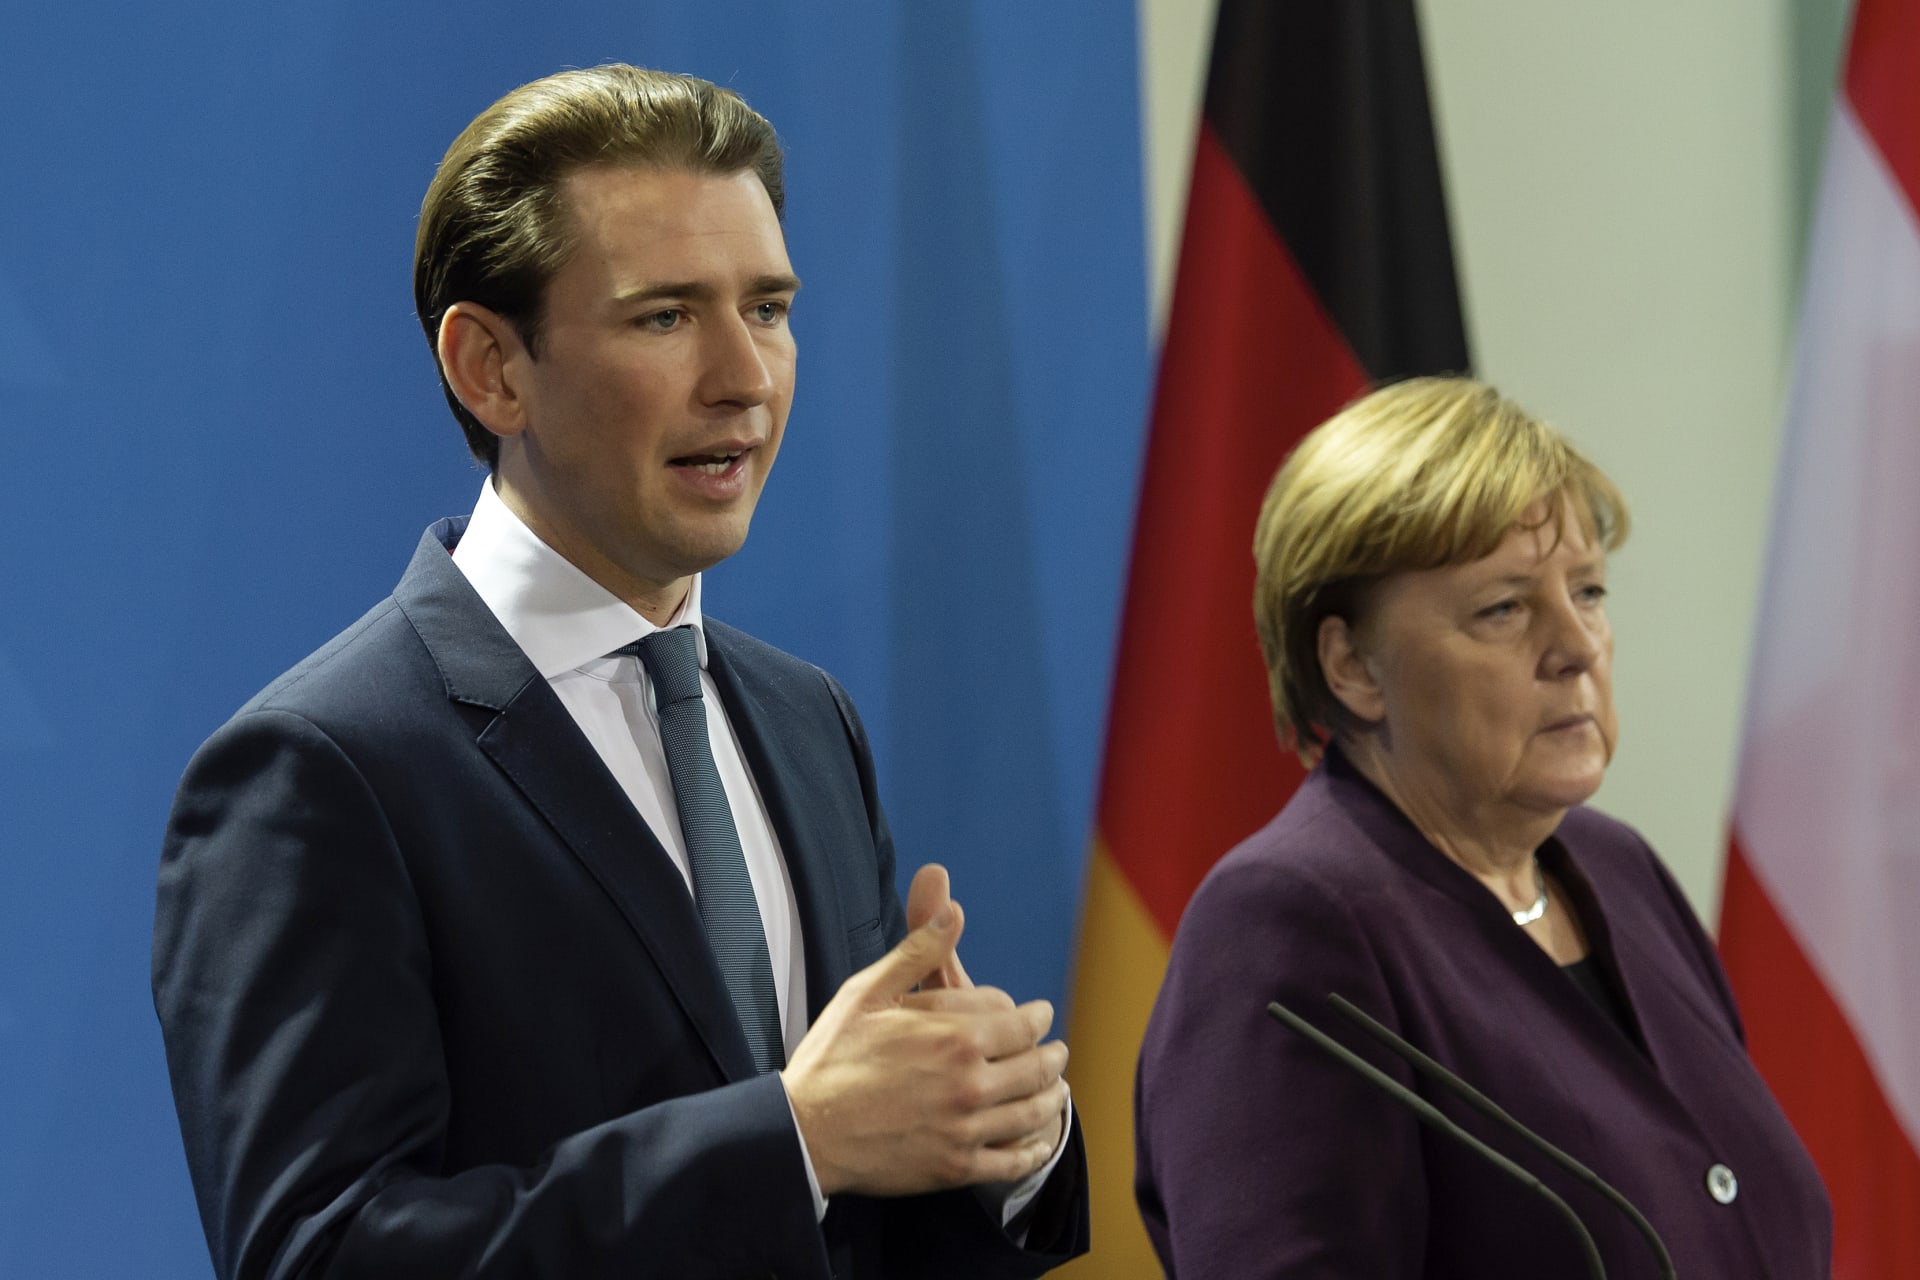 Rakouský kancléř Sebastian Kurz se na přístupu k uprchlíkům z Afghánistánu nedohodne s odcházející německou kancléřkou Angelou Merkelovou.